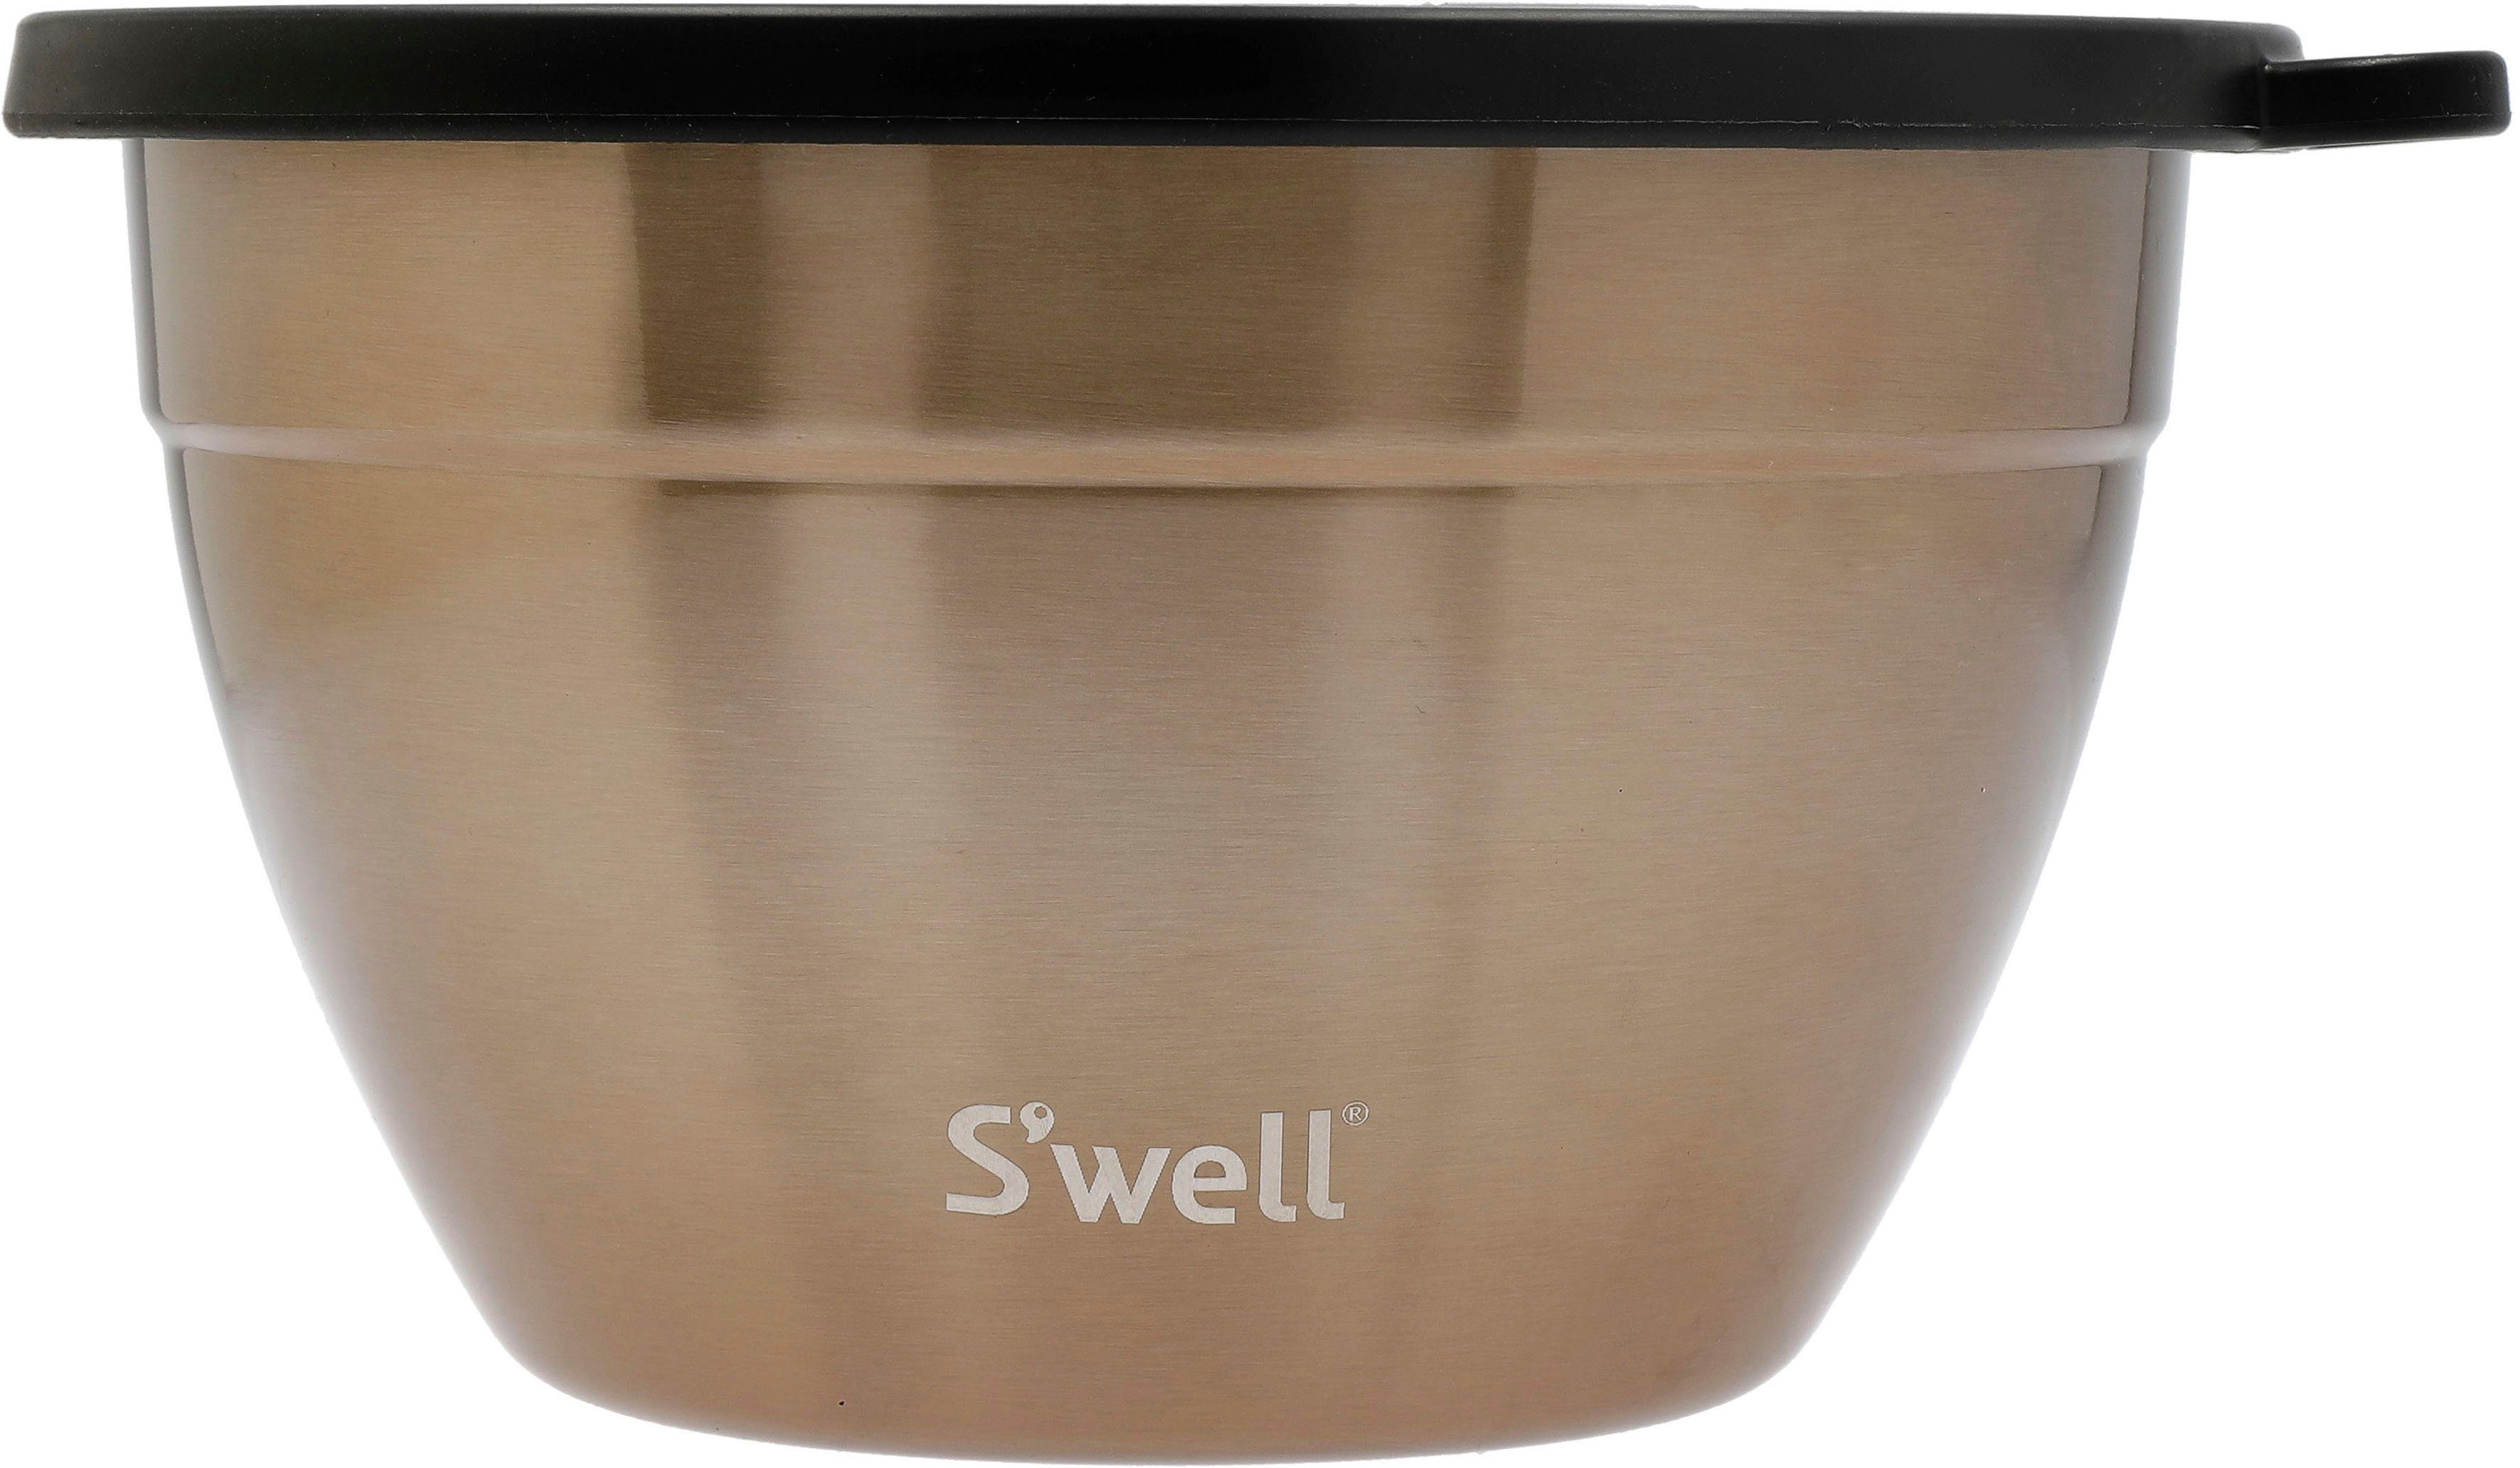 S'well Salatschüssel Außenschale Bowl vakuumisolierten Pyrite S'well Salad Therma-S'well®-Technologie 1.9L, Kit, (3-tlg), Gold Edelstahl, Calacatta mit